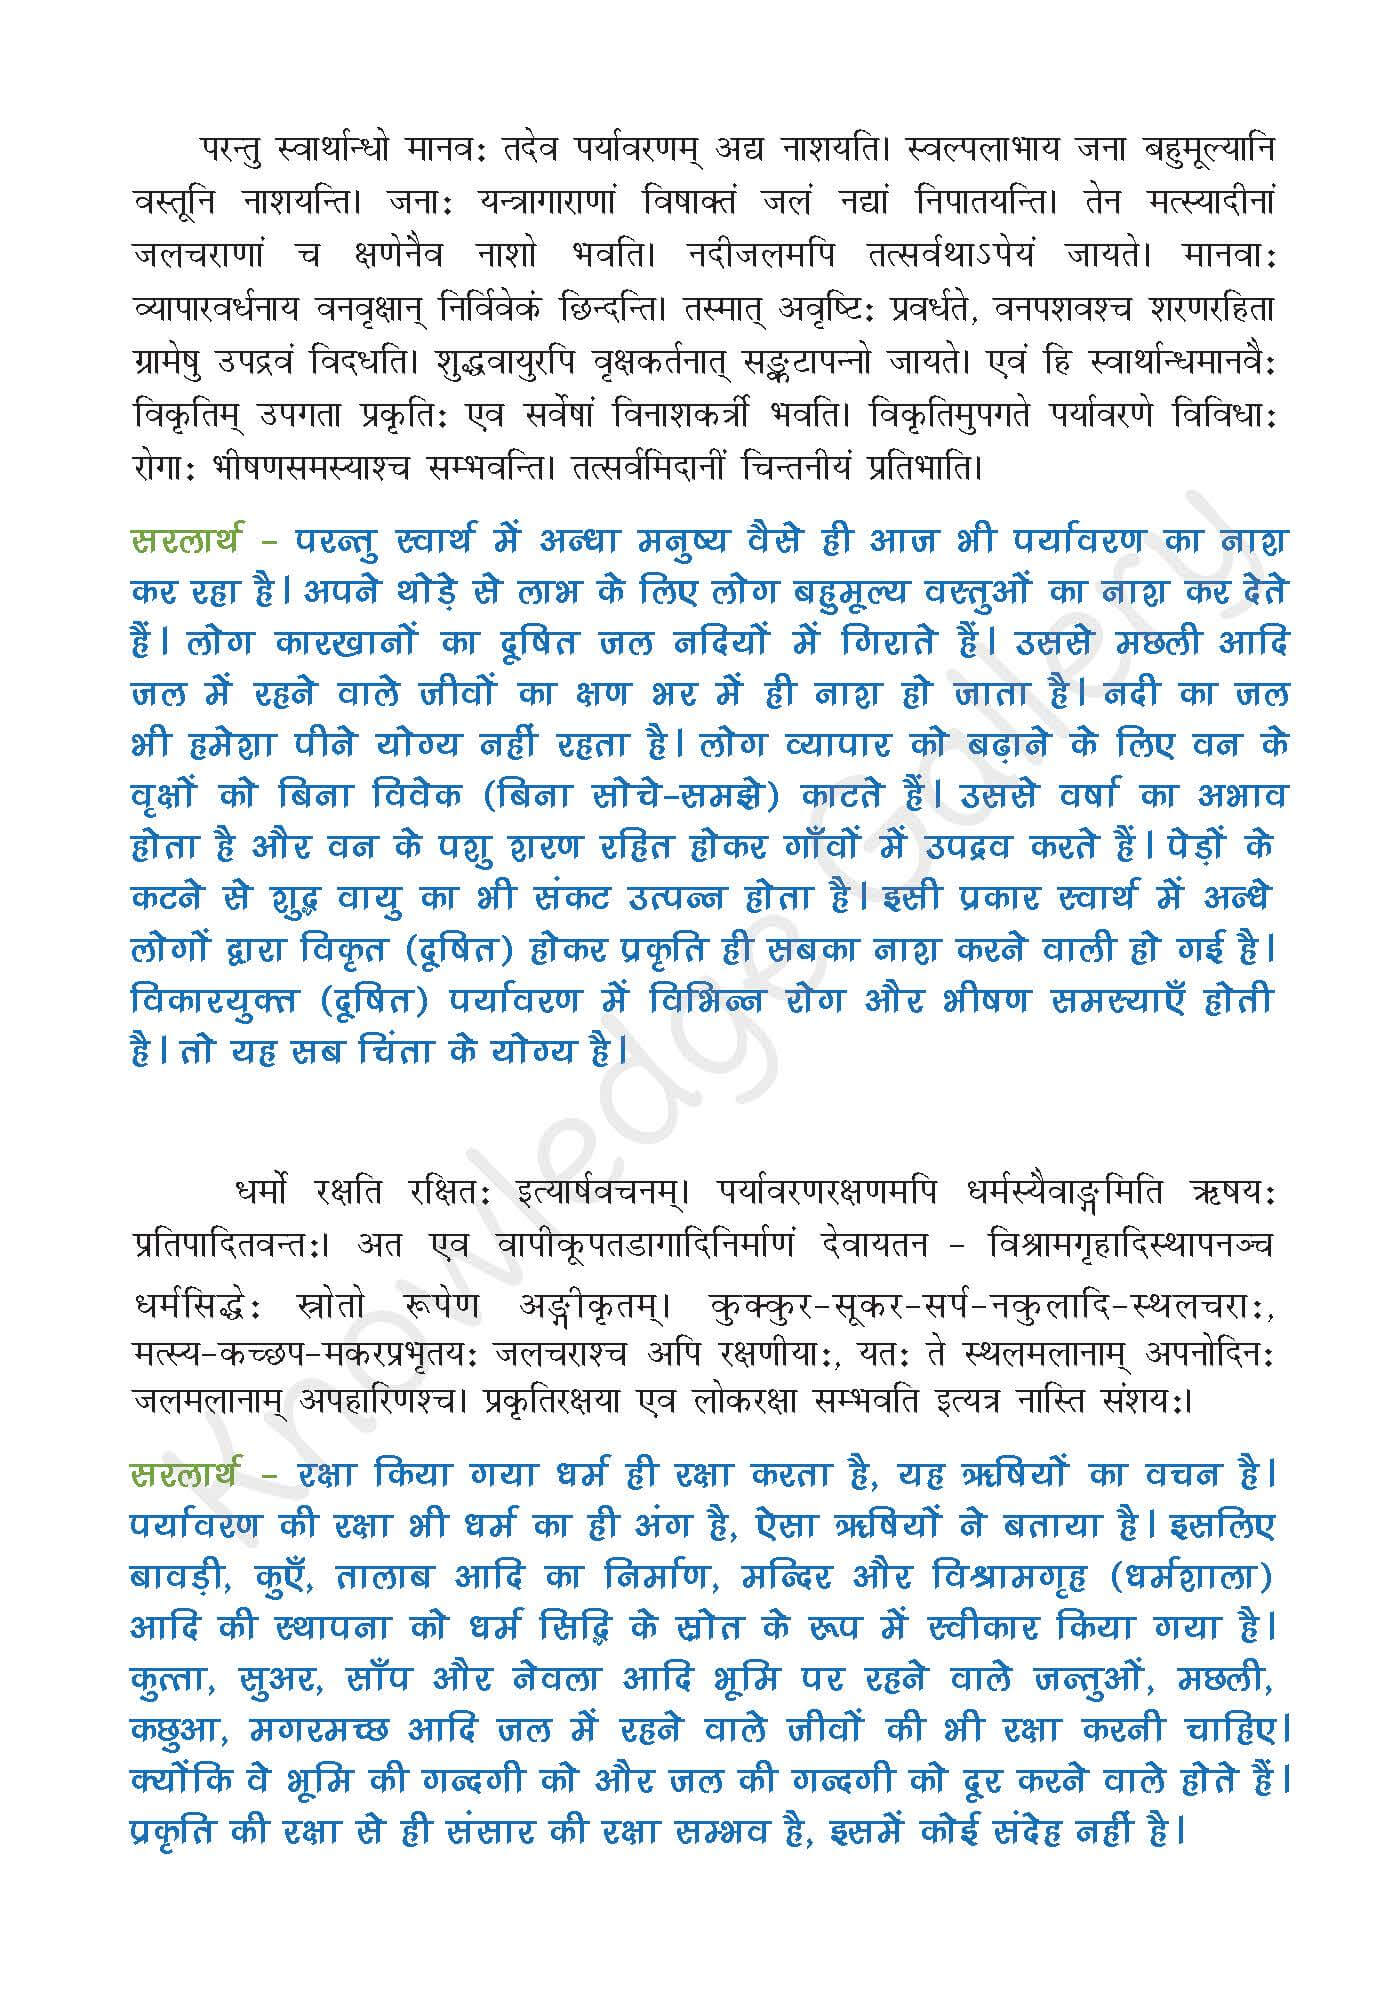 NCERT Solution For Class 9 Sanskrit Chapter 9 part 3